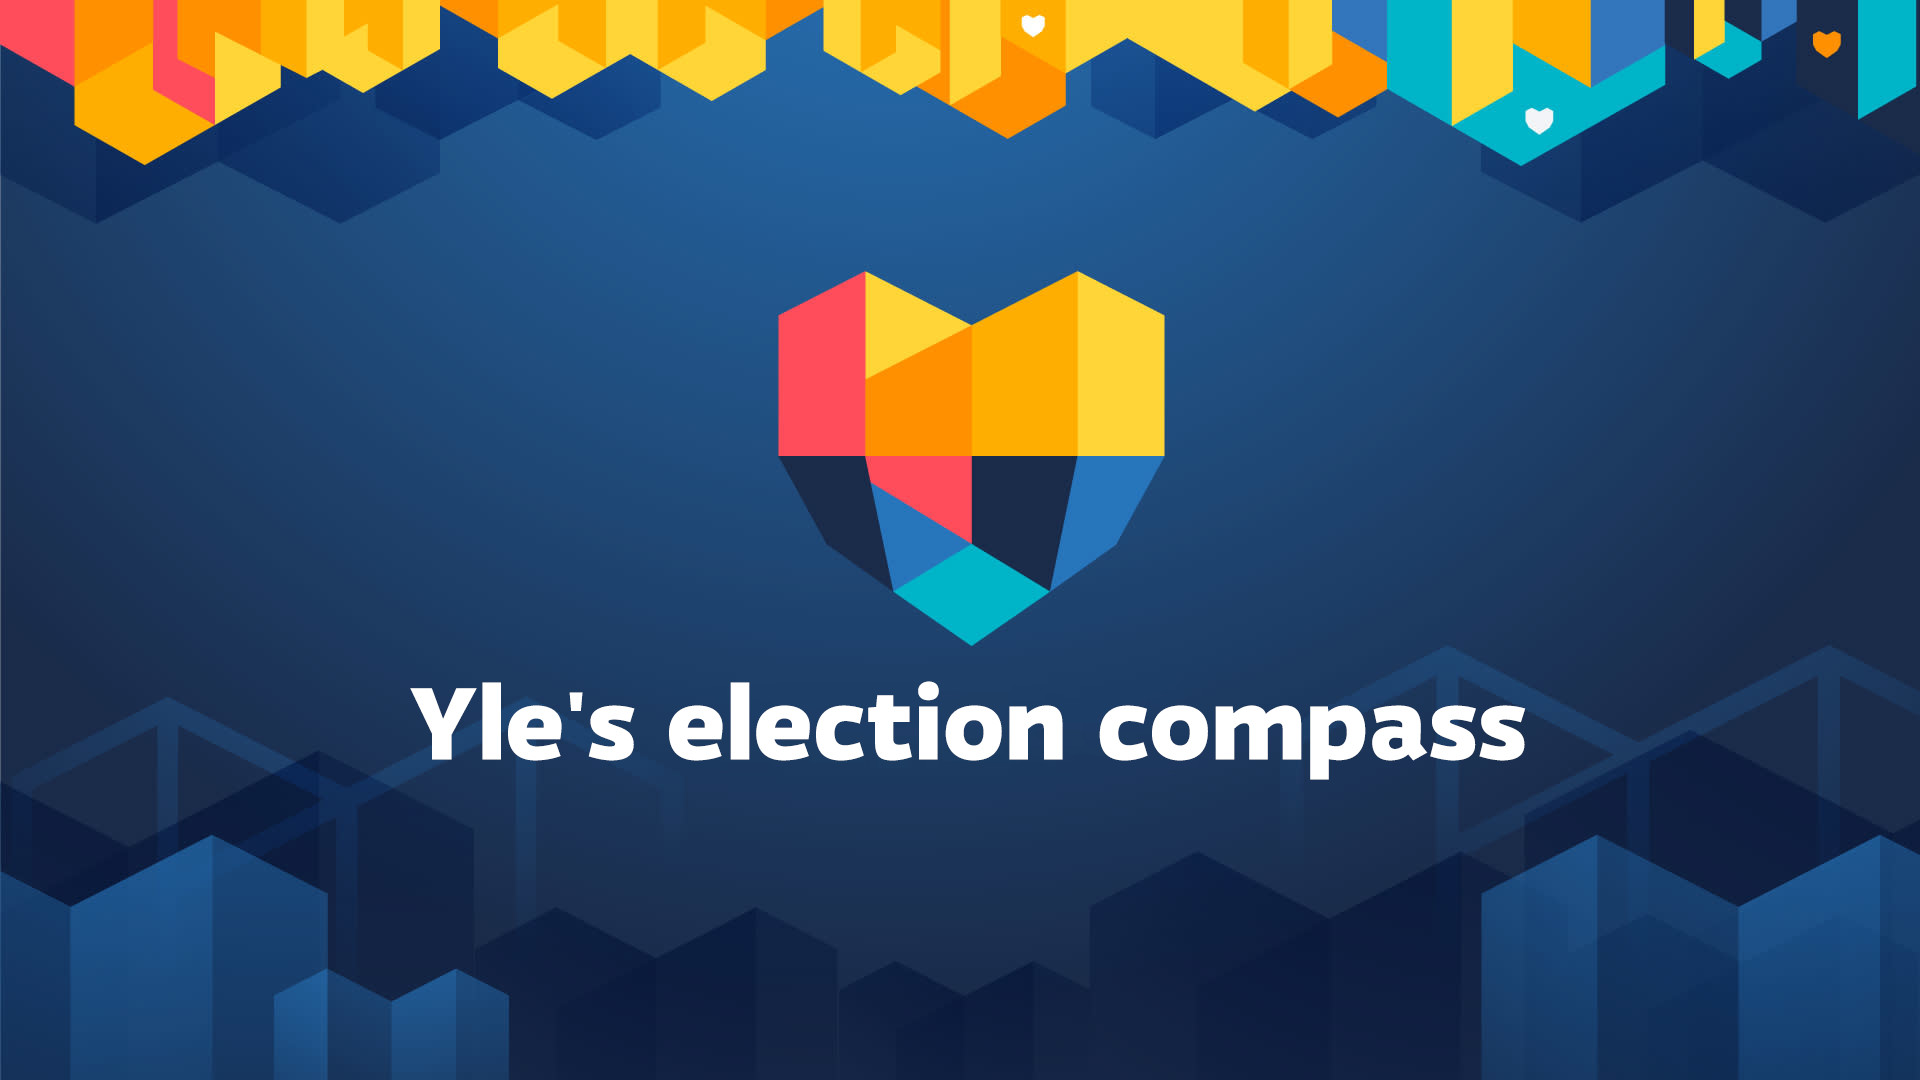 Kompas pilihan raya Yle mencari parti dan calon yang berkongsi pandangan anda